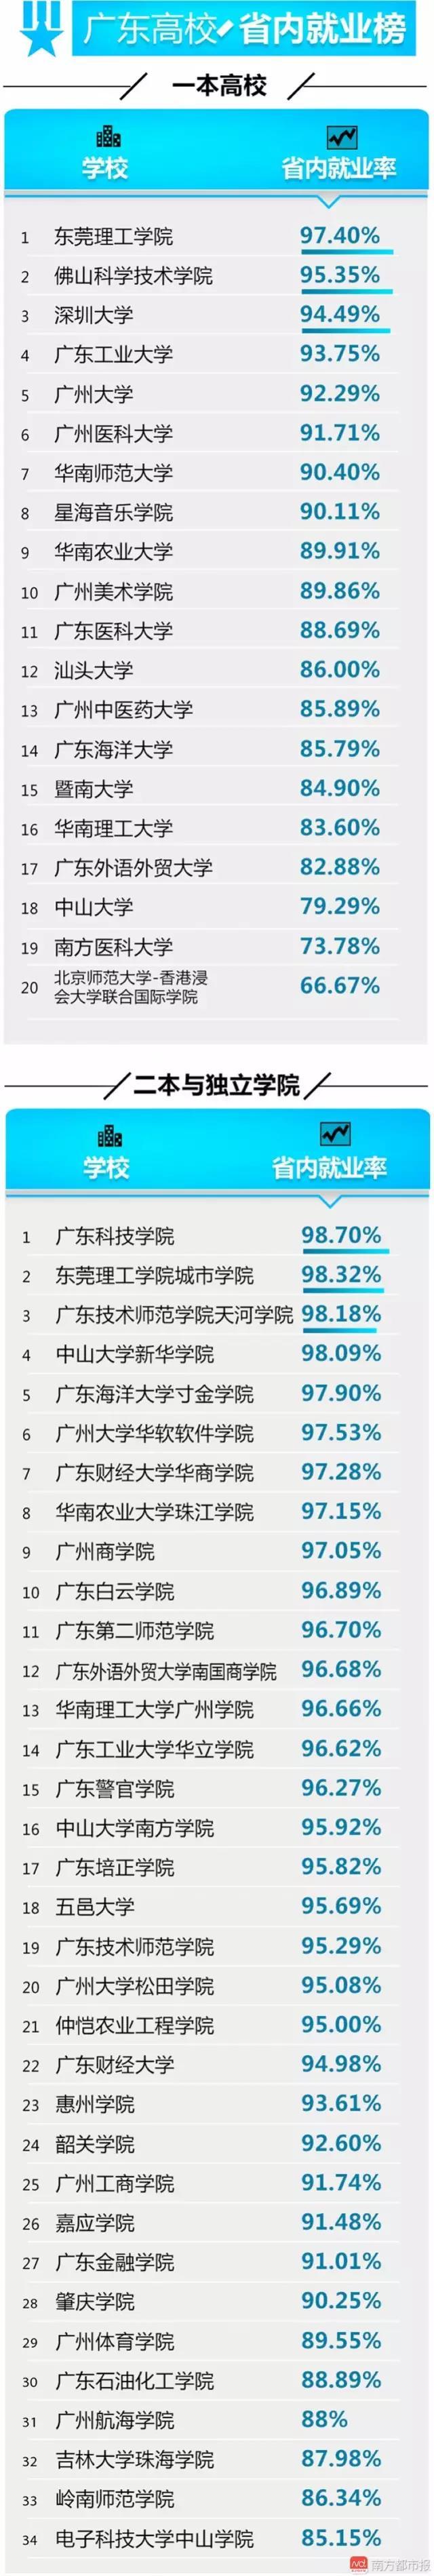 广东高校毕业生达56万 这些专业人才需求旺2